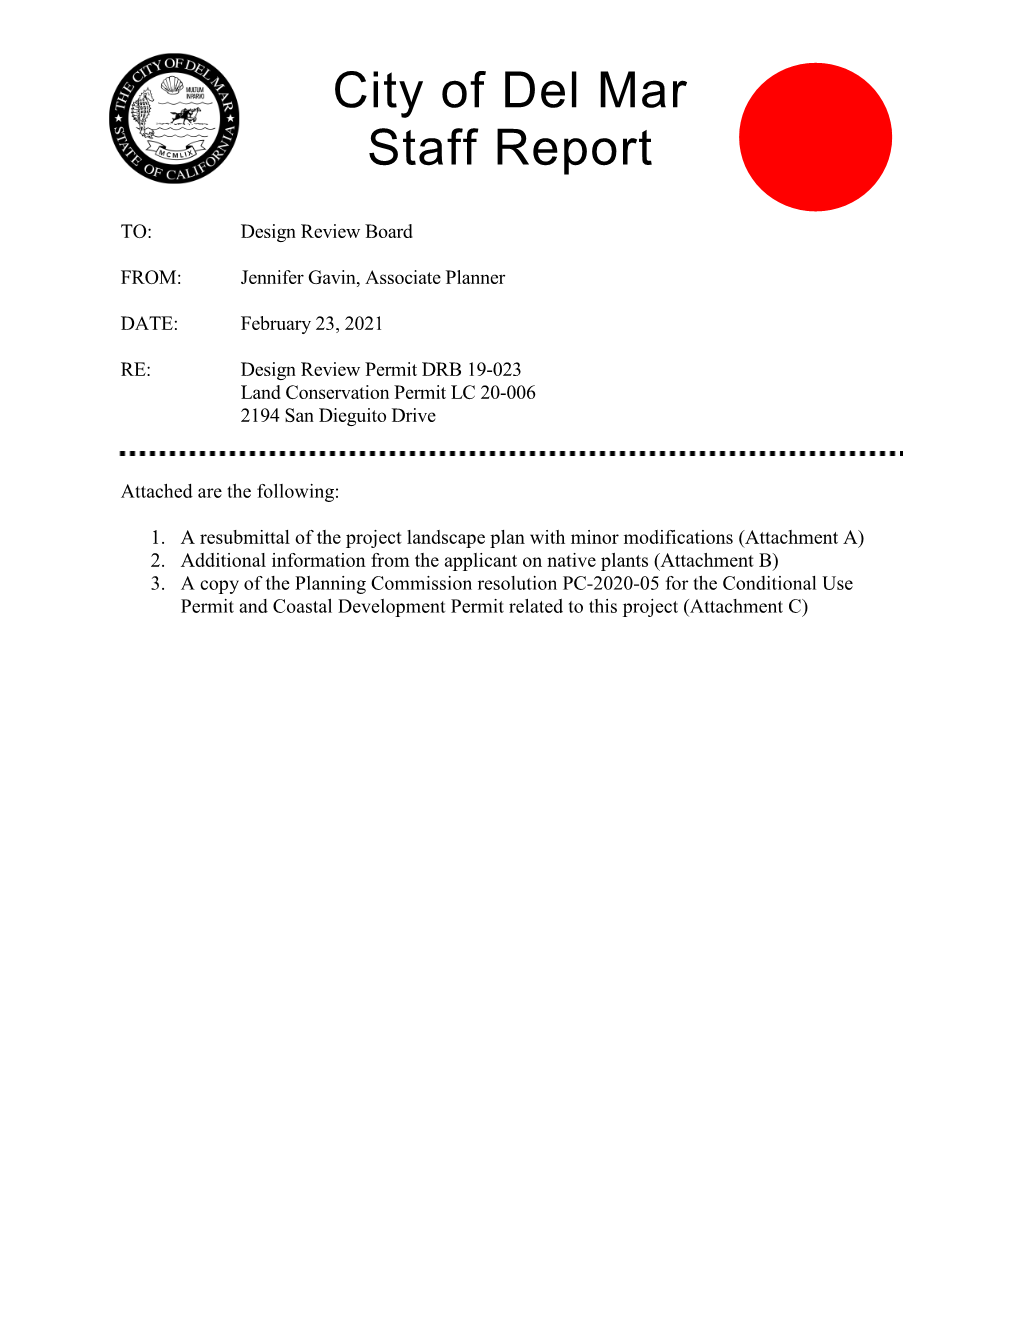 City of Del Mar Staff Report